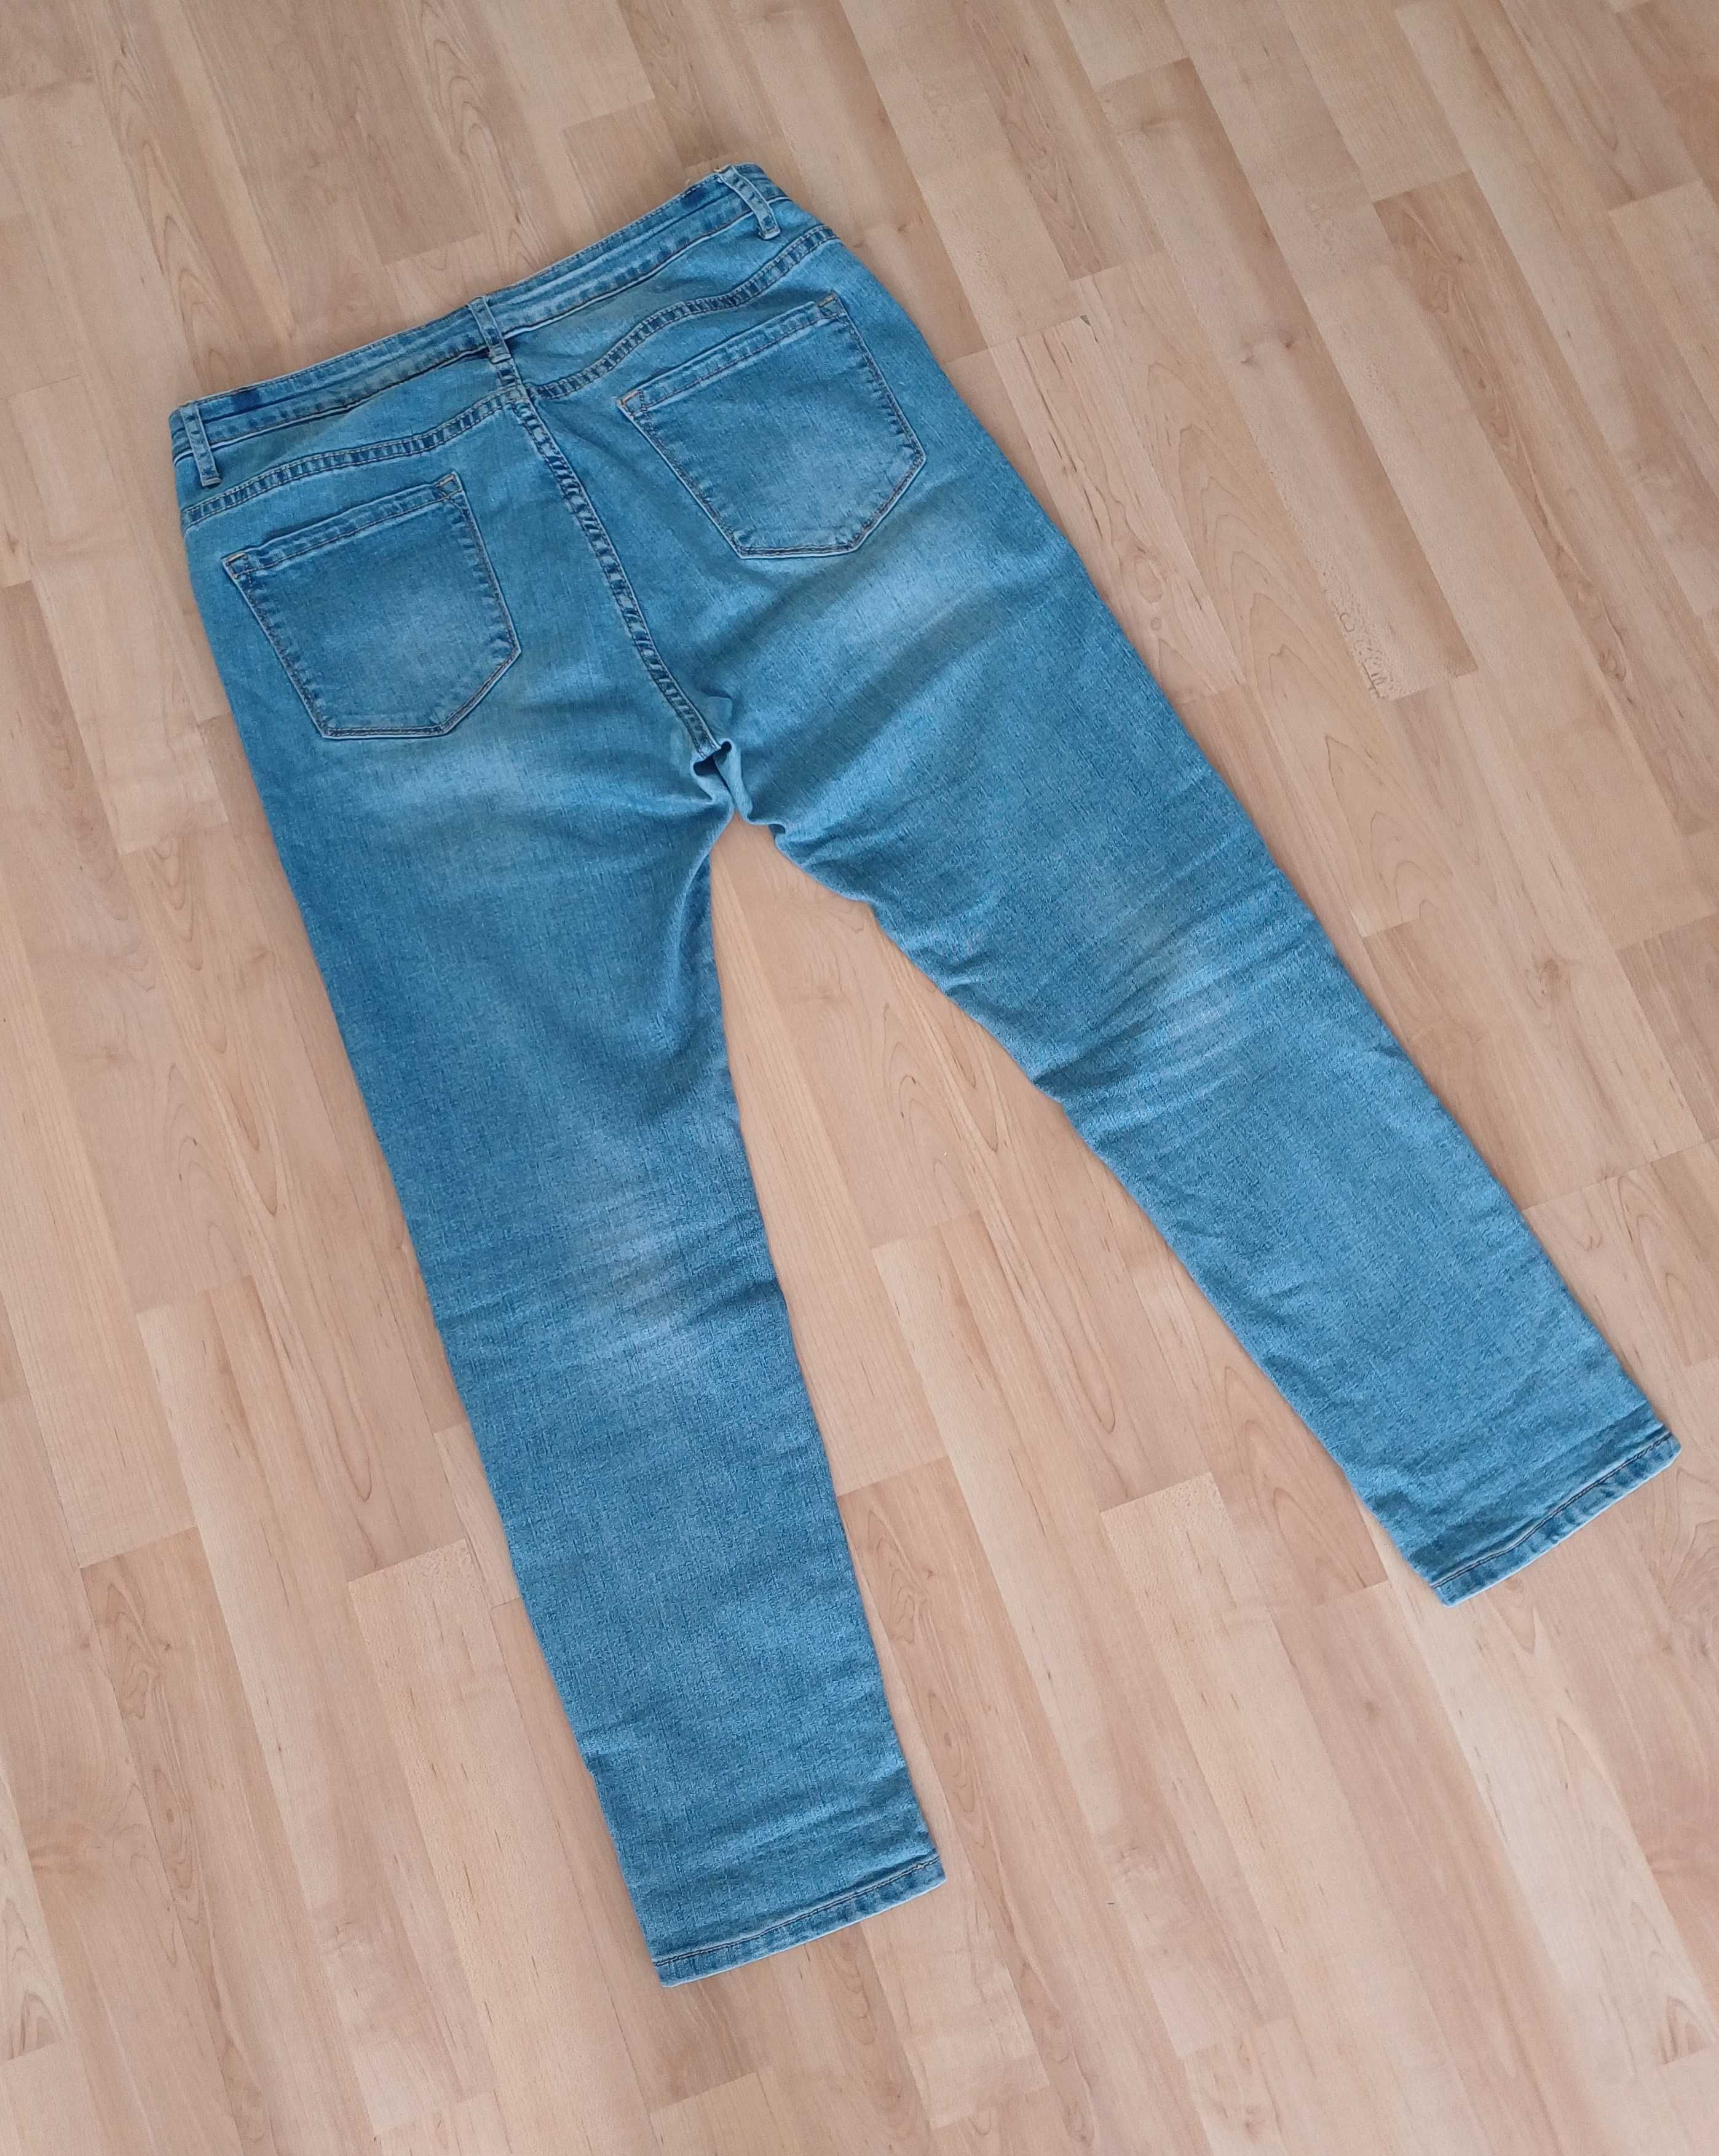 Spodnie długie damskie jeans niebieskie elastyczne 44/XXL wysoki stan